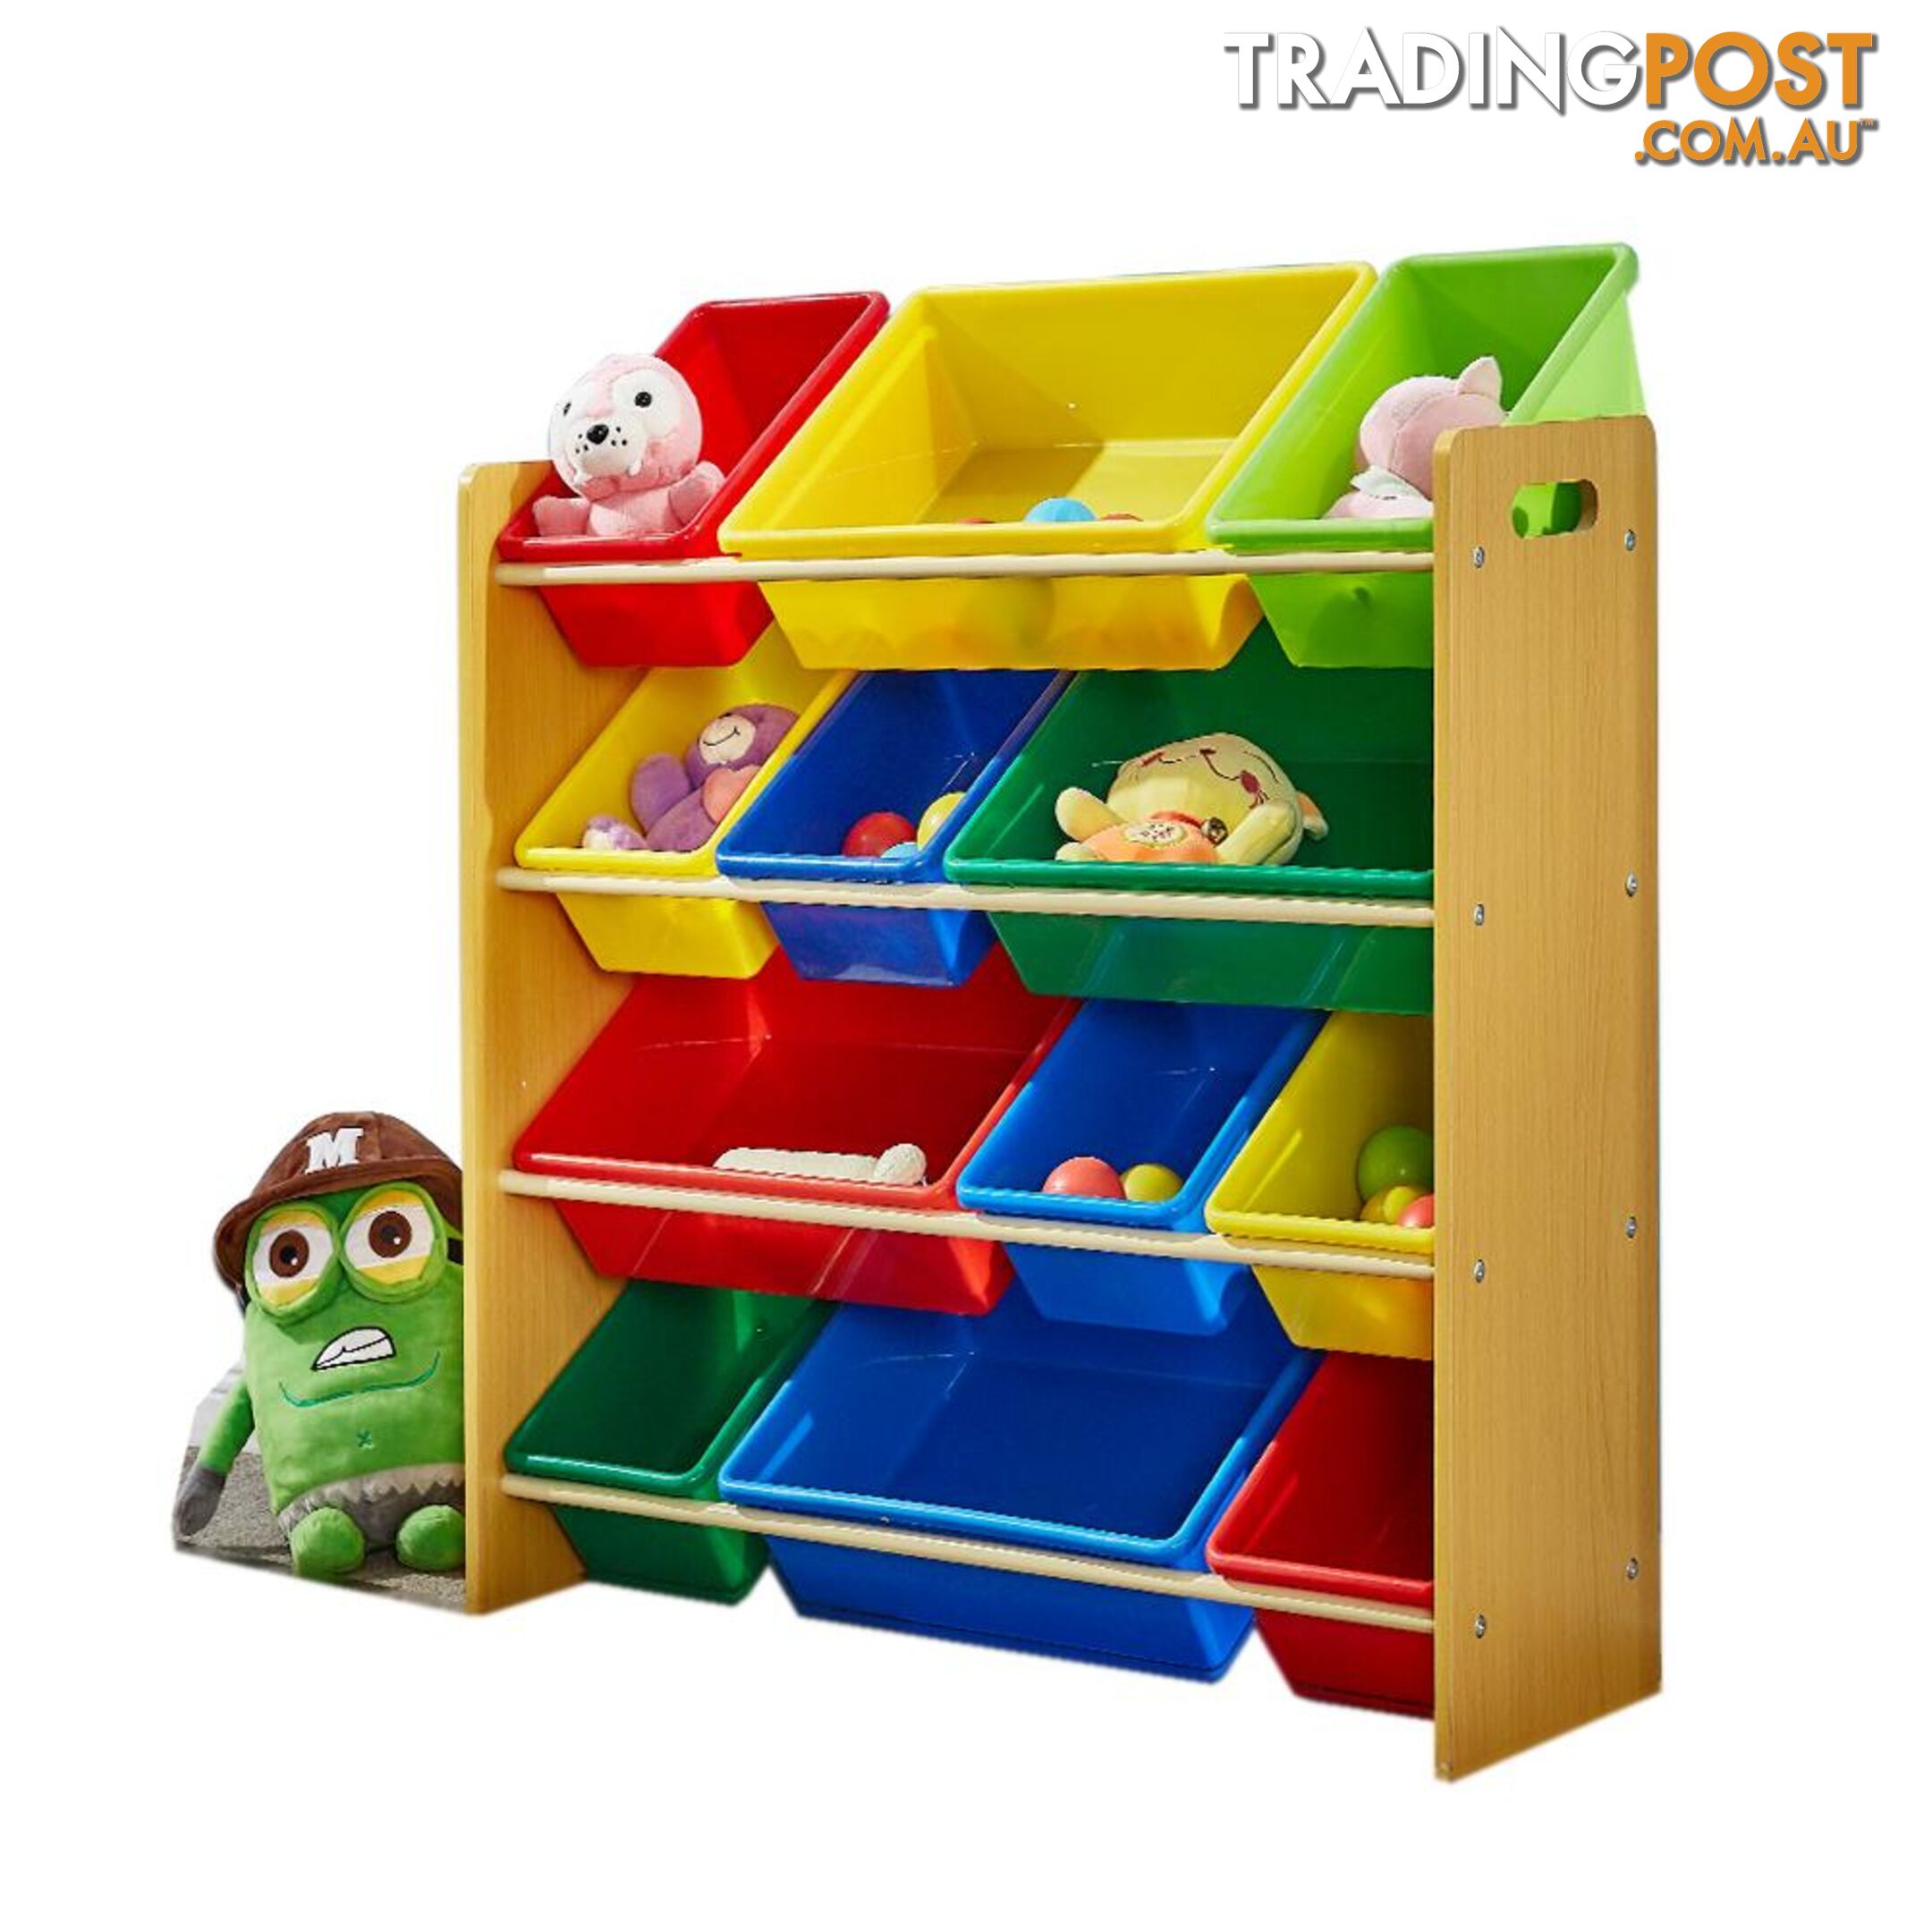 4 Tier Wooden Kids Children Organizer Bookshelf With 12 Plastic Bins - Unbranded - 787976570798